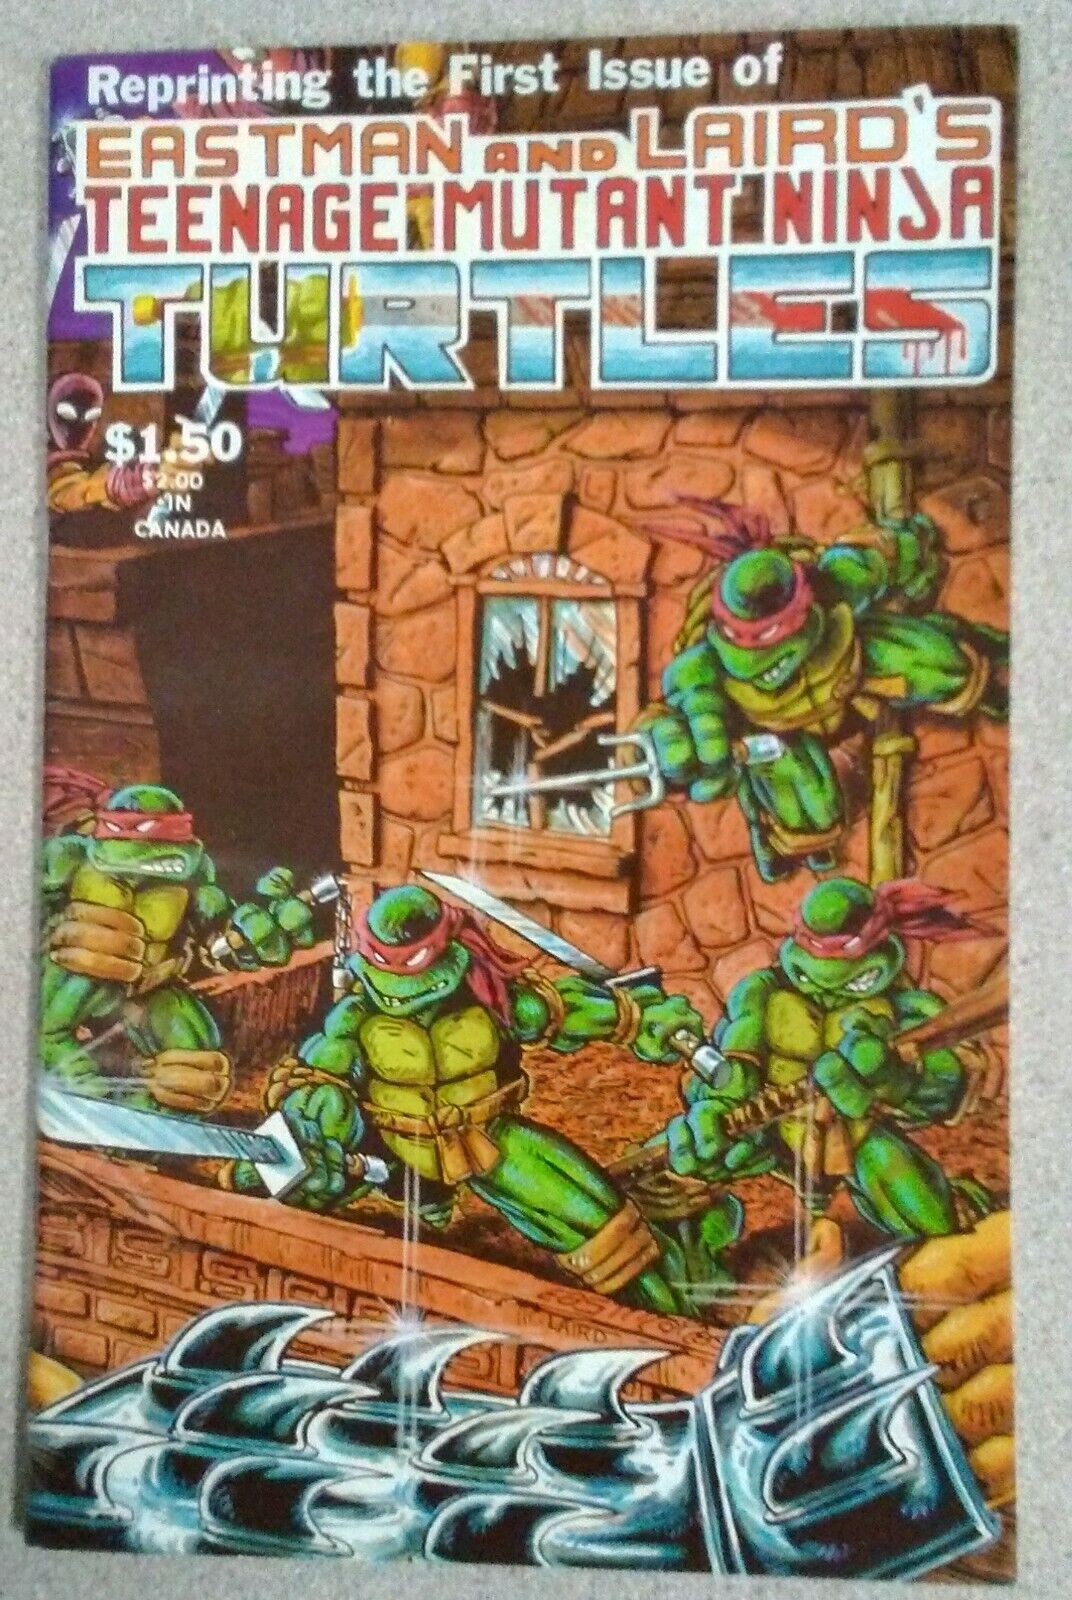 Teenage mutant ninja turtles 1 4th print